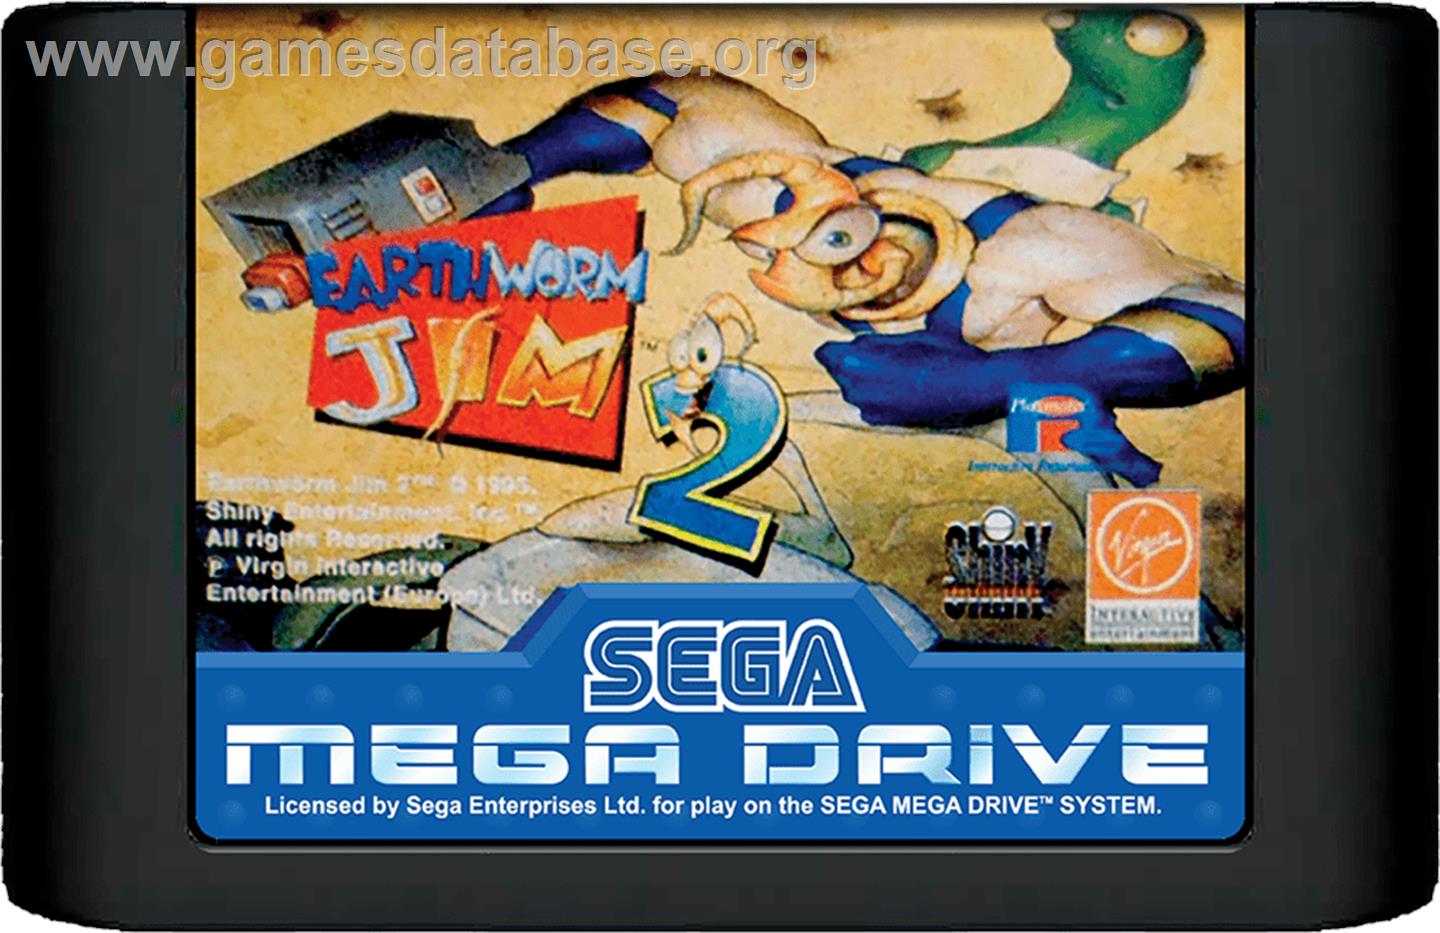 Earthworm Jim 2 - Sega Genesis - Artwork - Cartridge